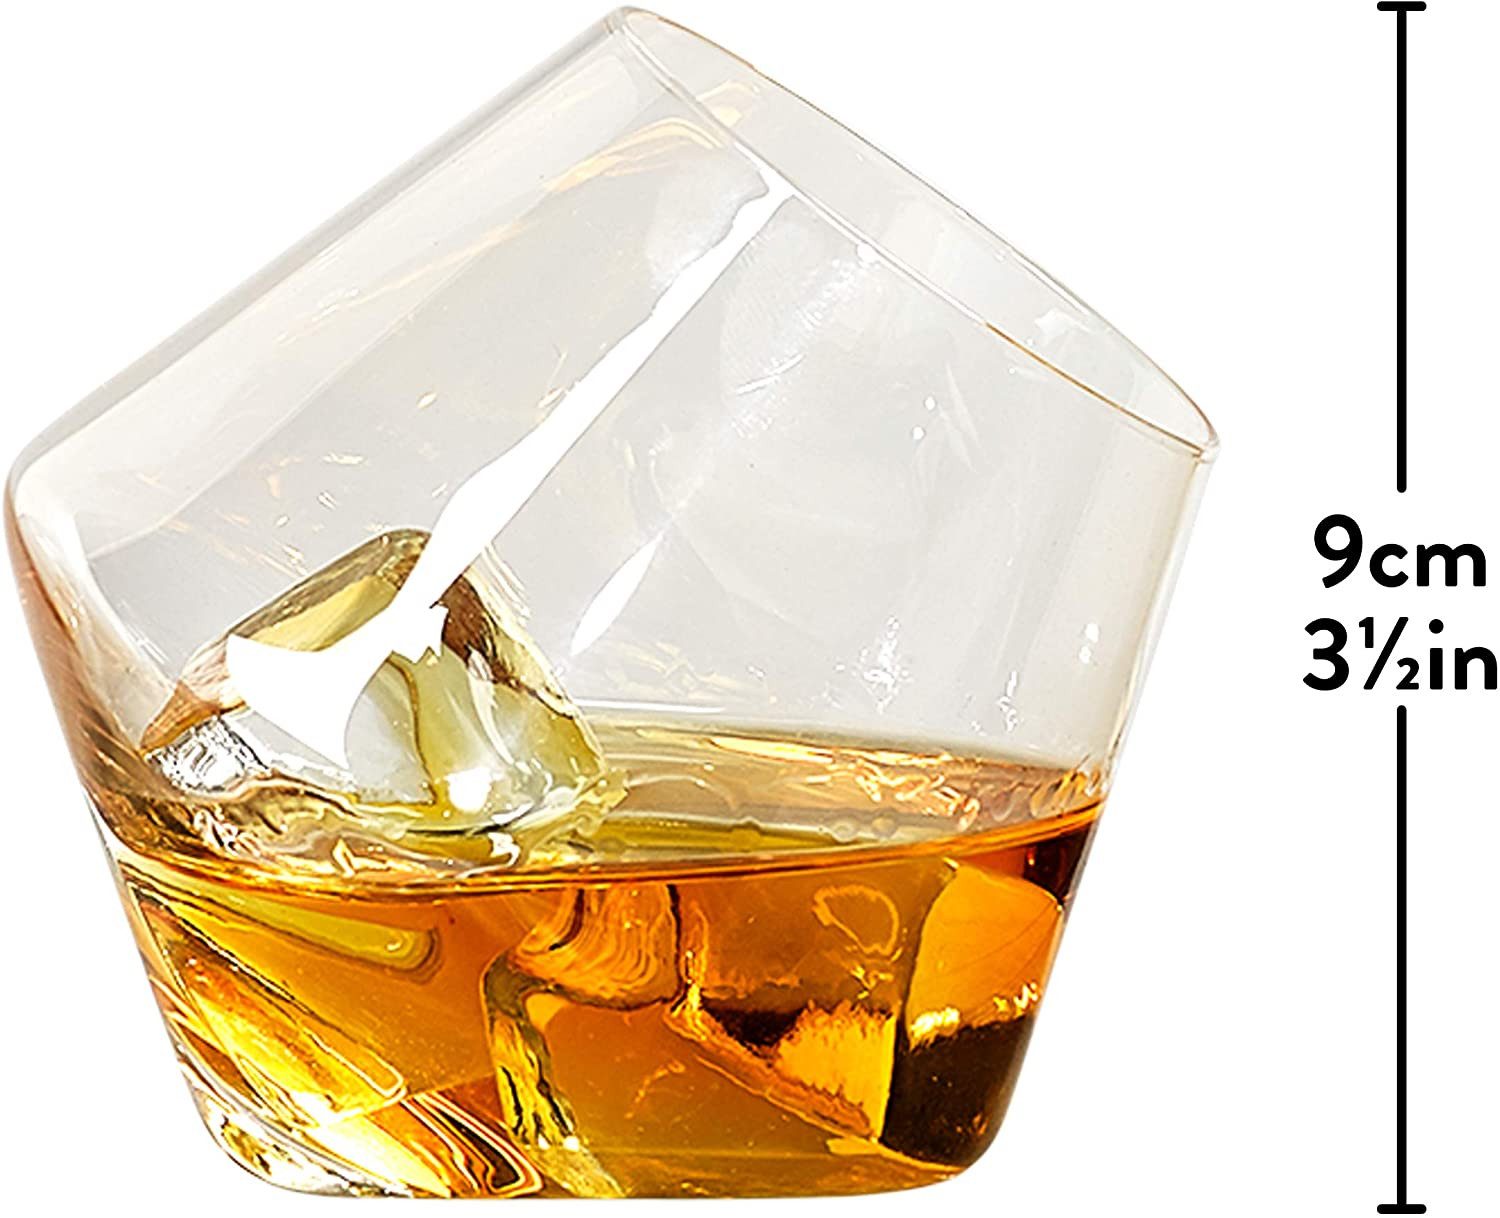 Gentlemen's Whiskyglas Gentlemen 's Hardware Rocken, Whisky Gläser-Set, Quartz Glas, außergewöhnliches Whisky Glas für Feierabend, Feiern, Party